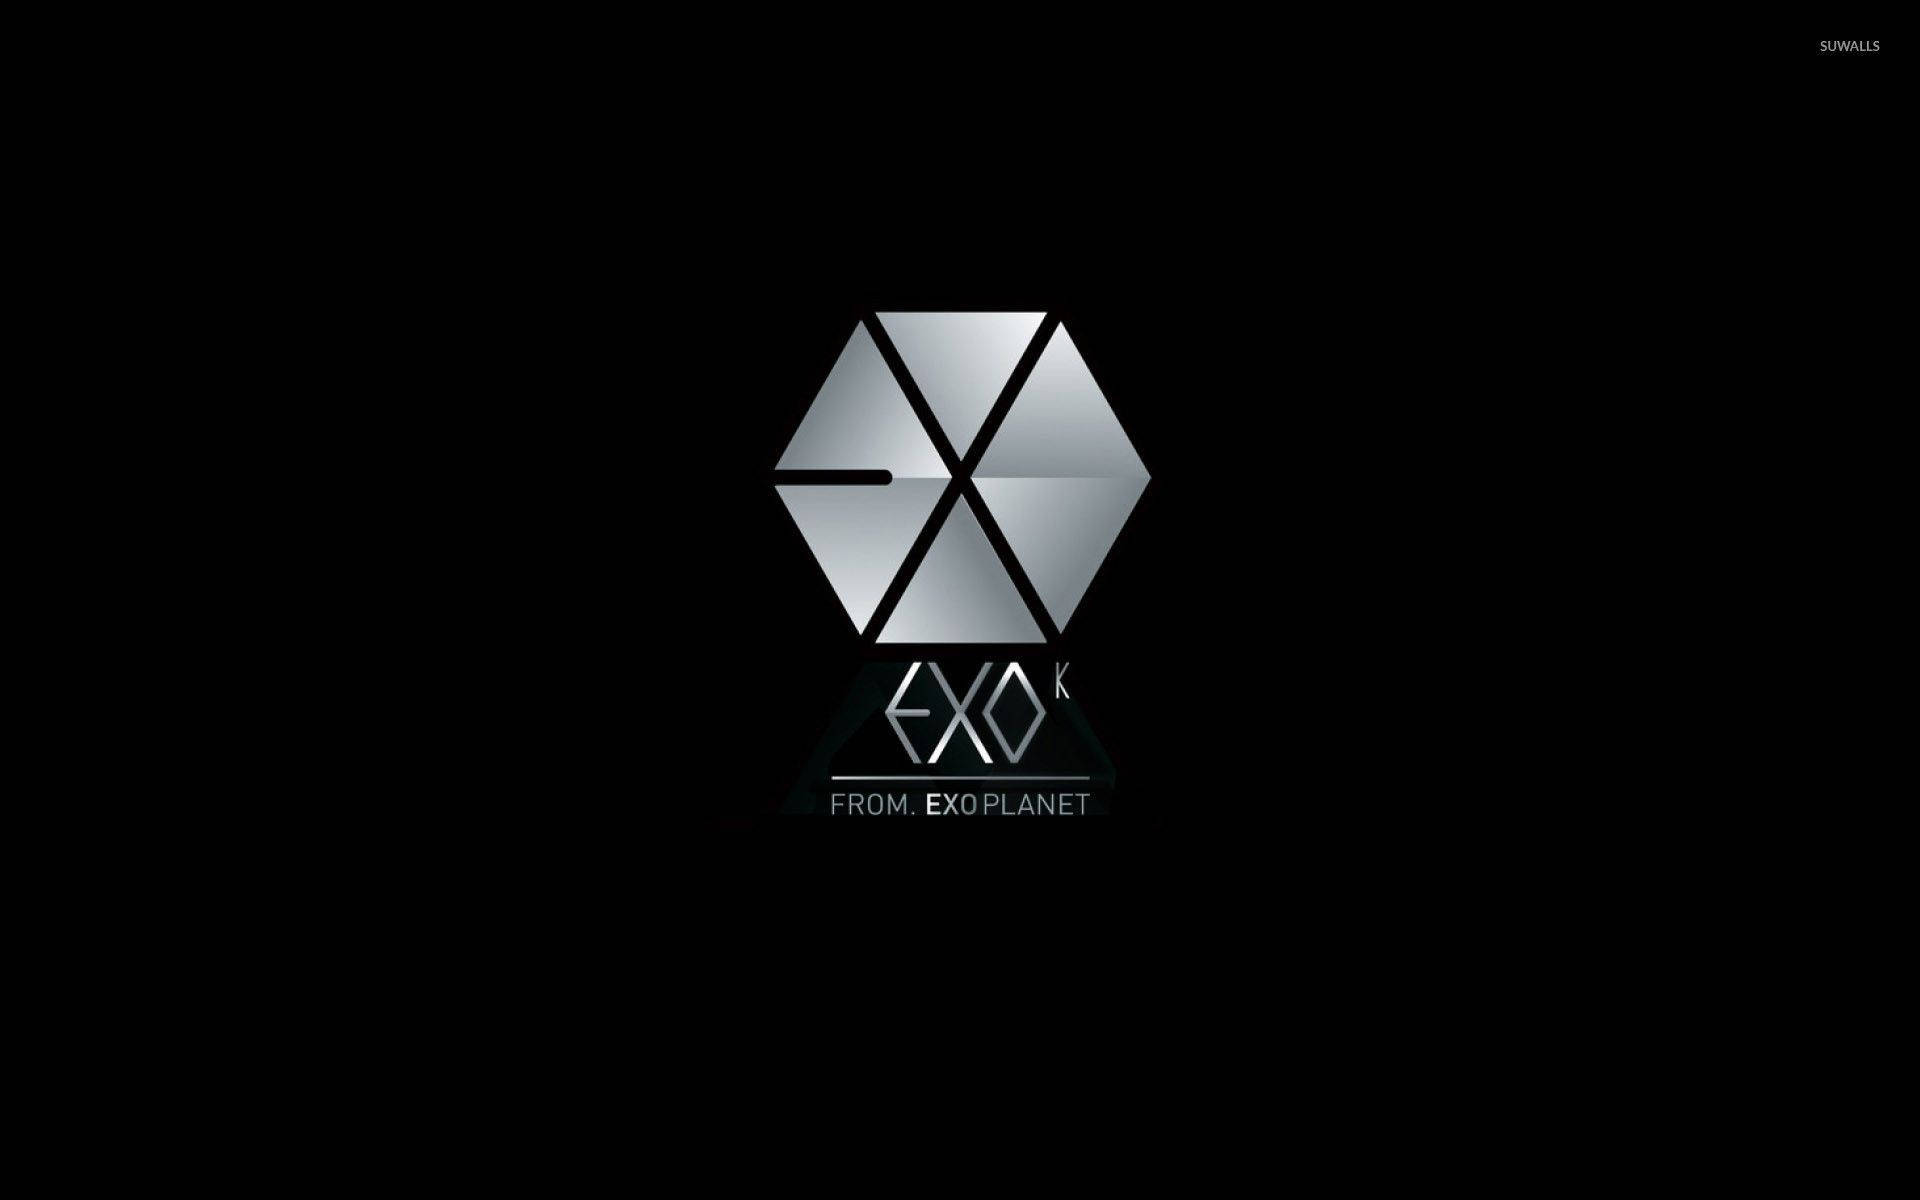 Những hình ảnh về classic logo Exo desktop wallpaper sẽ khiến bạn liên tưởng đến những kỷ niệm xưa cũ của nhóm nhạc Kpop nổi tiếng này. Với sự kết hợp độc đáo giữa gam màu và hình ảnh, bạn sẽ thấy được sức hút của Exo với người hâm mộ toàn cầu. Hãy tải về và thể hiện sự yêu mến của mình với Exo ngay hôm nay!